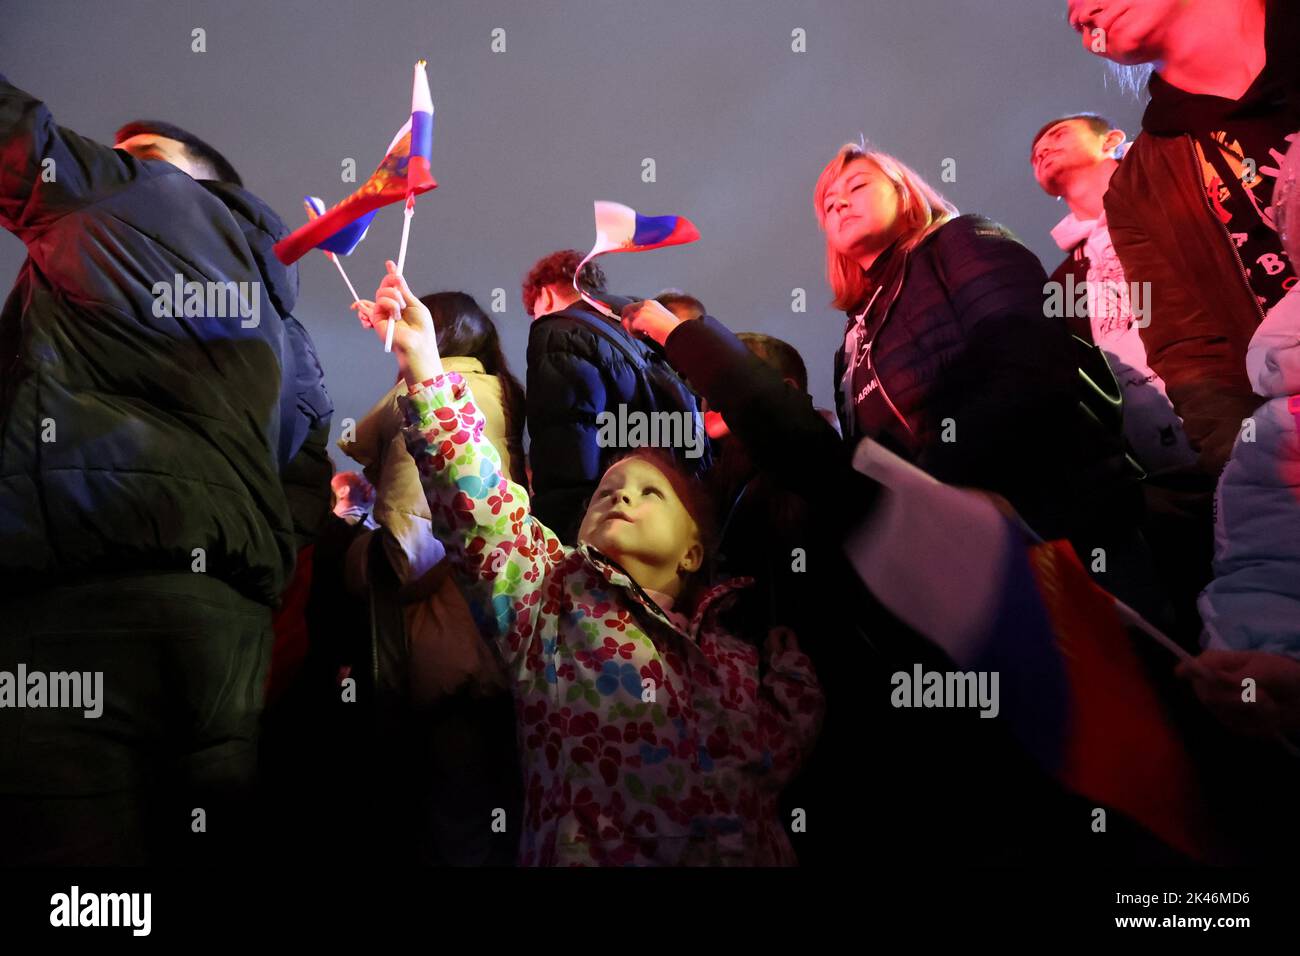 La gente partecipa a un concerto che segna l'annessione dichiarata dei territori controllati dalla Russia di quattro regioni ucraine di Donetsk, Luhansk, Kherson e Zaporizhzhia, dopo aver tenuto ciò che le autorità russe hanno chiamato referendum nelle aree occupate dell'Ucraina, condannate da Kyiv e dai governi di tutto il mondo, nella Piazza Rossa nel centro di Mosca, Russia, Settembre 30, 2022. FOTOGRAFO REUTERS/REUTERS Foto Stock